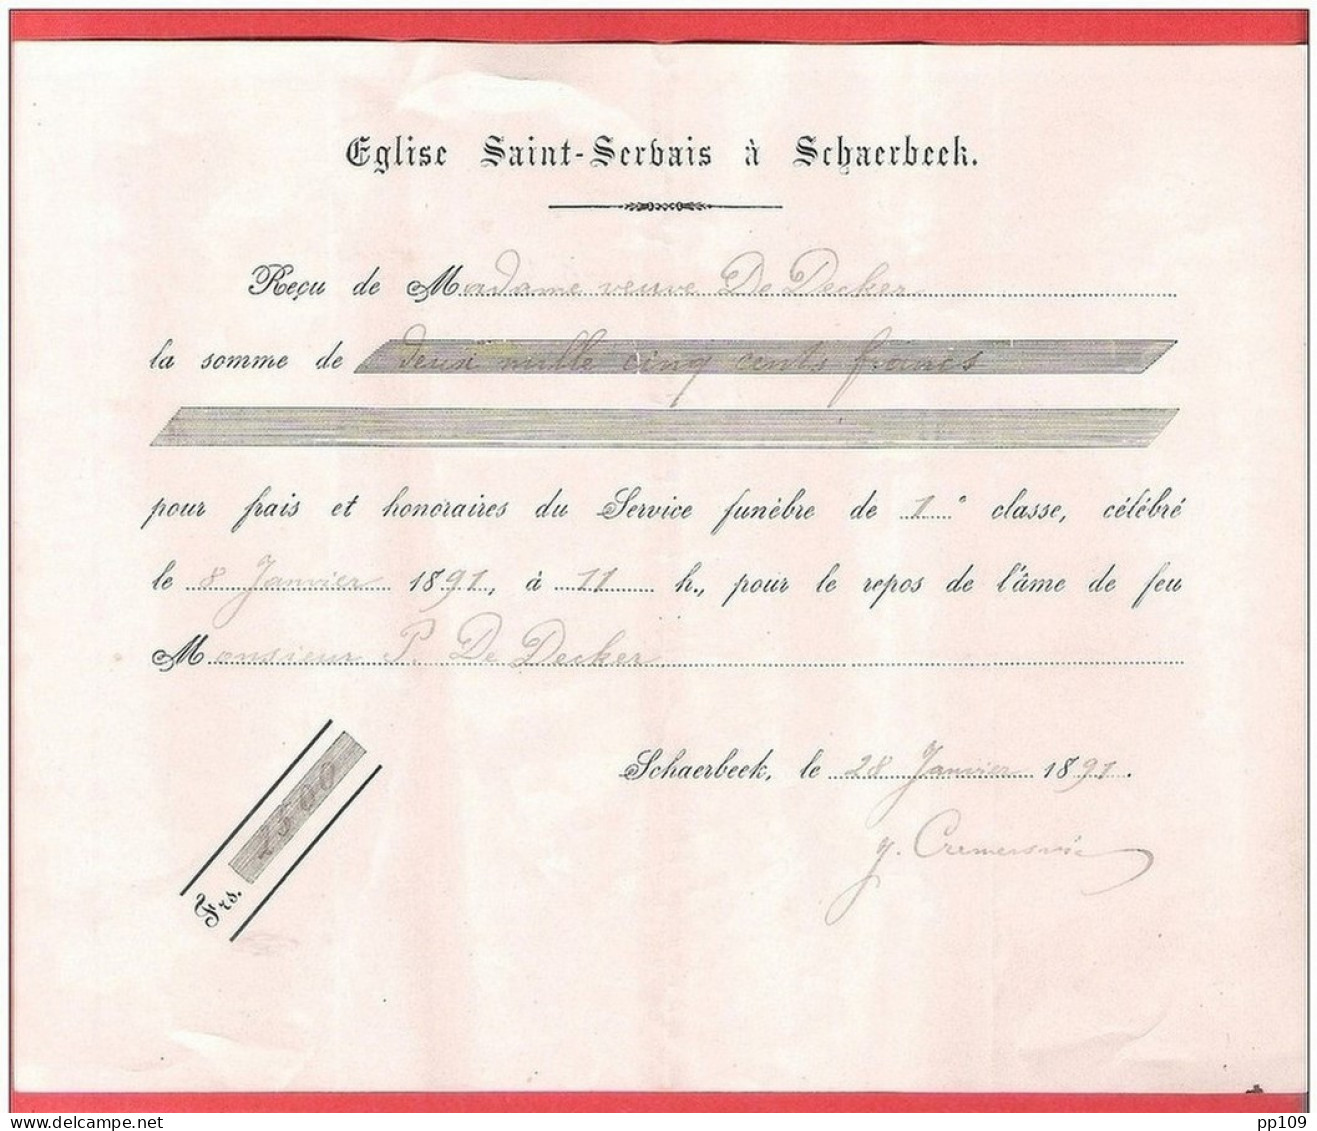 SCHAERBEEK  Eglise SAINT SERVAIS  Reçu Pour Frais De Service Funèbre  1891 - Documentos